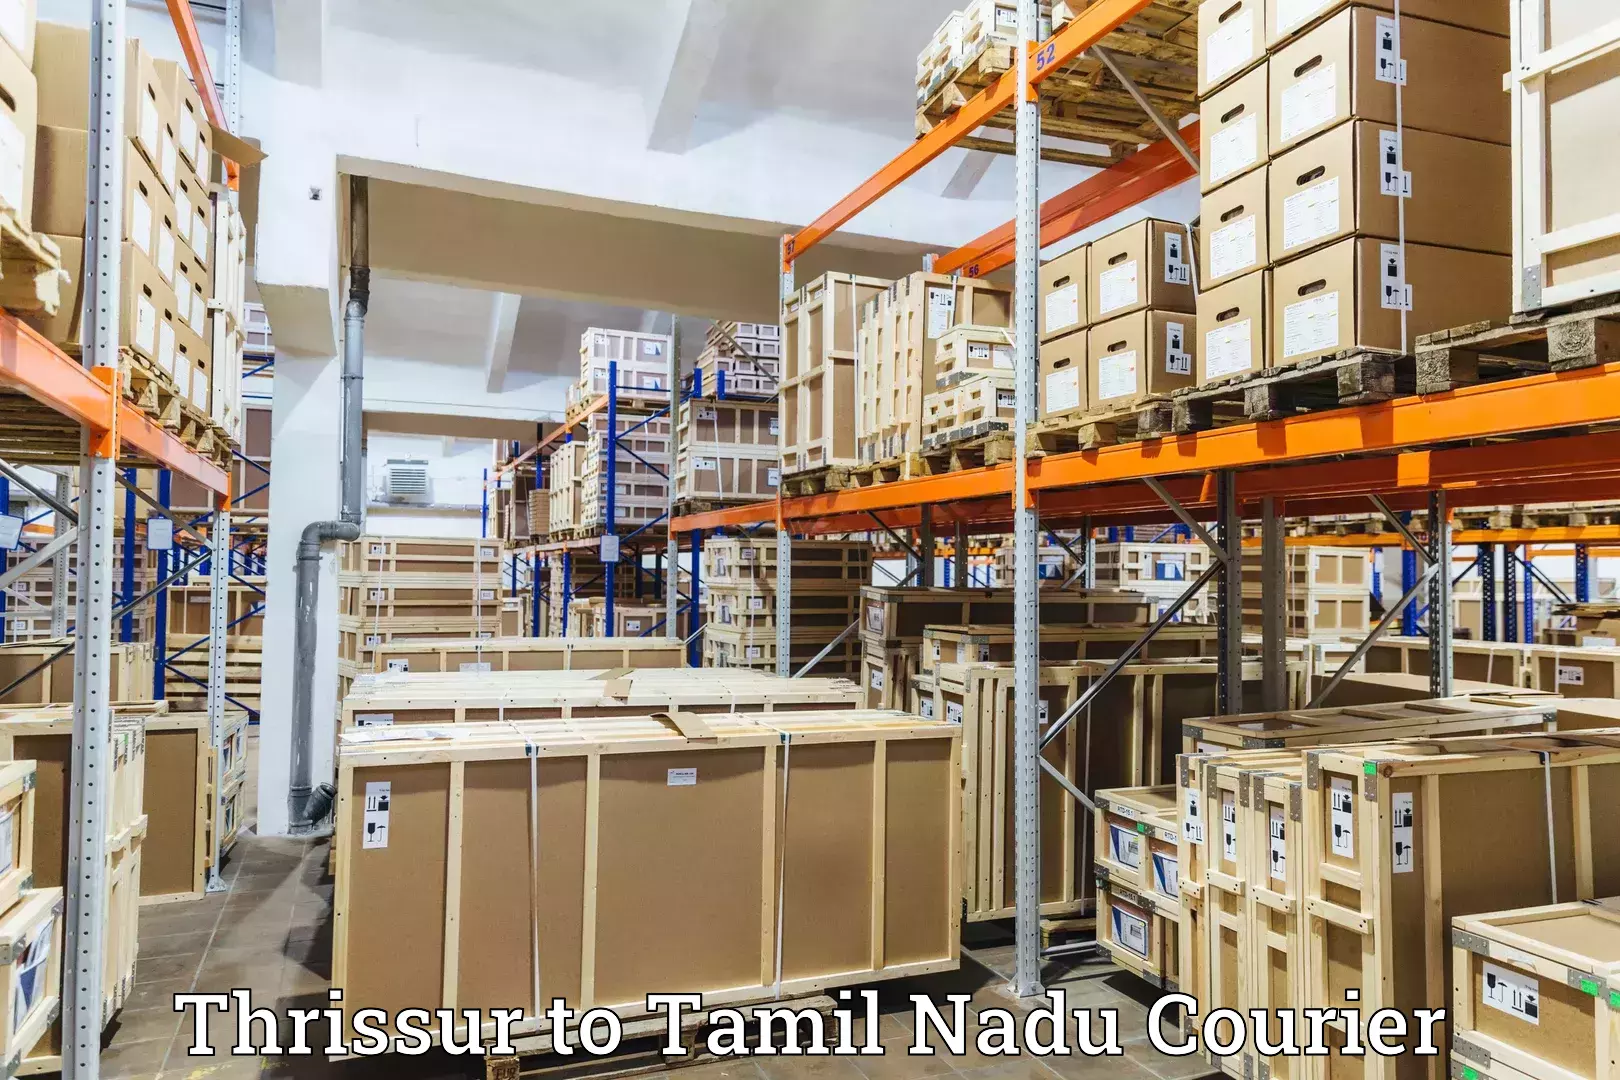 Online shipping calculator Thrissur to Denkanikottai